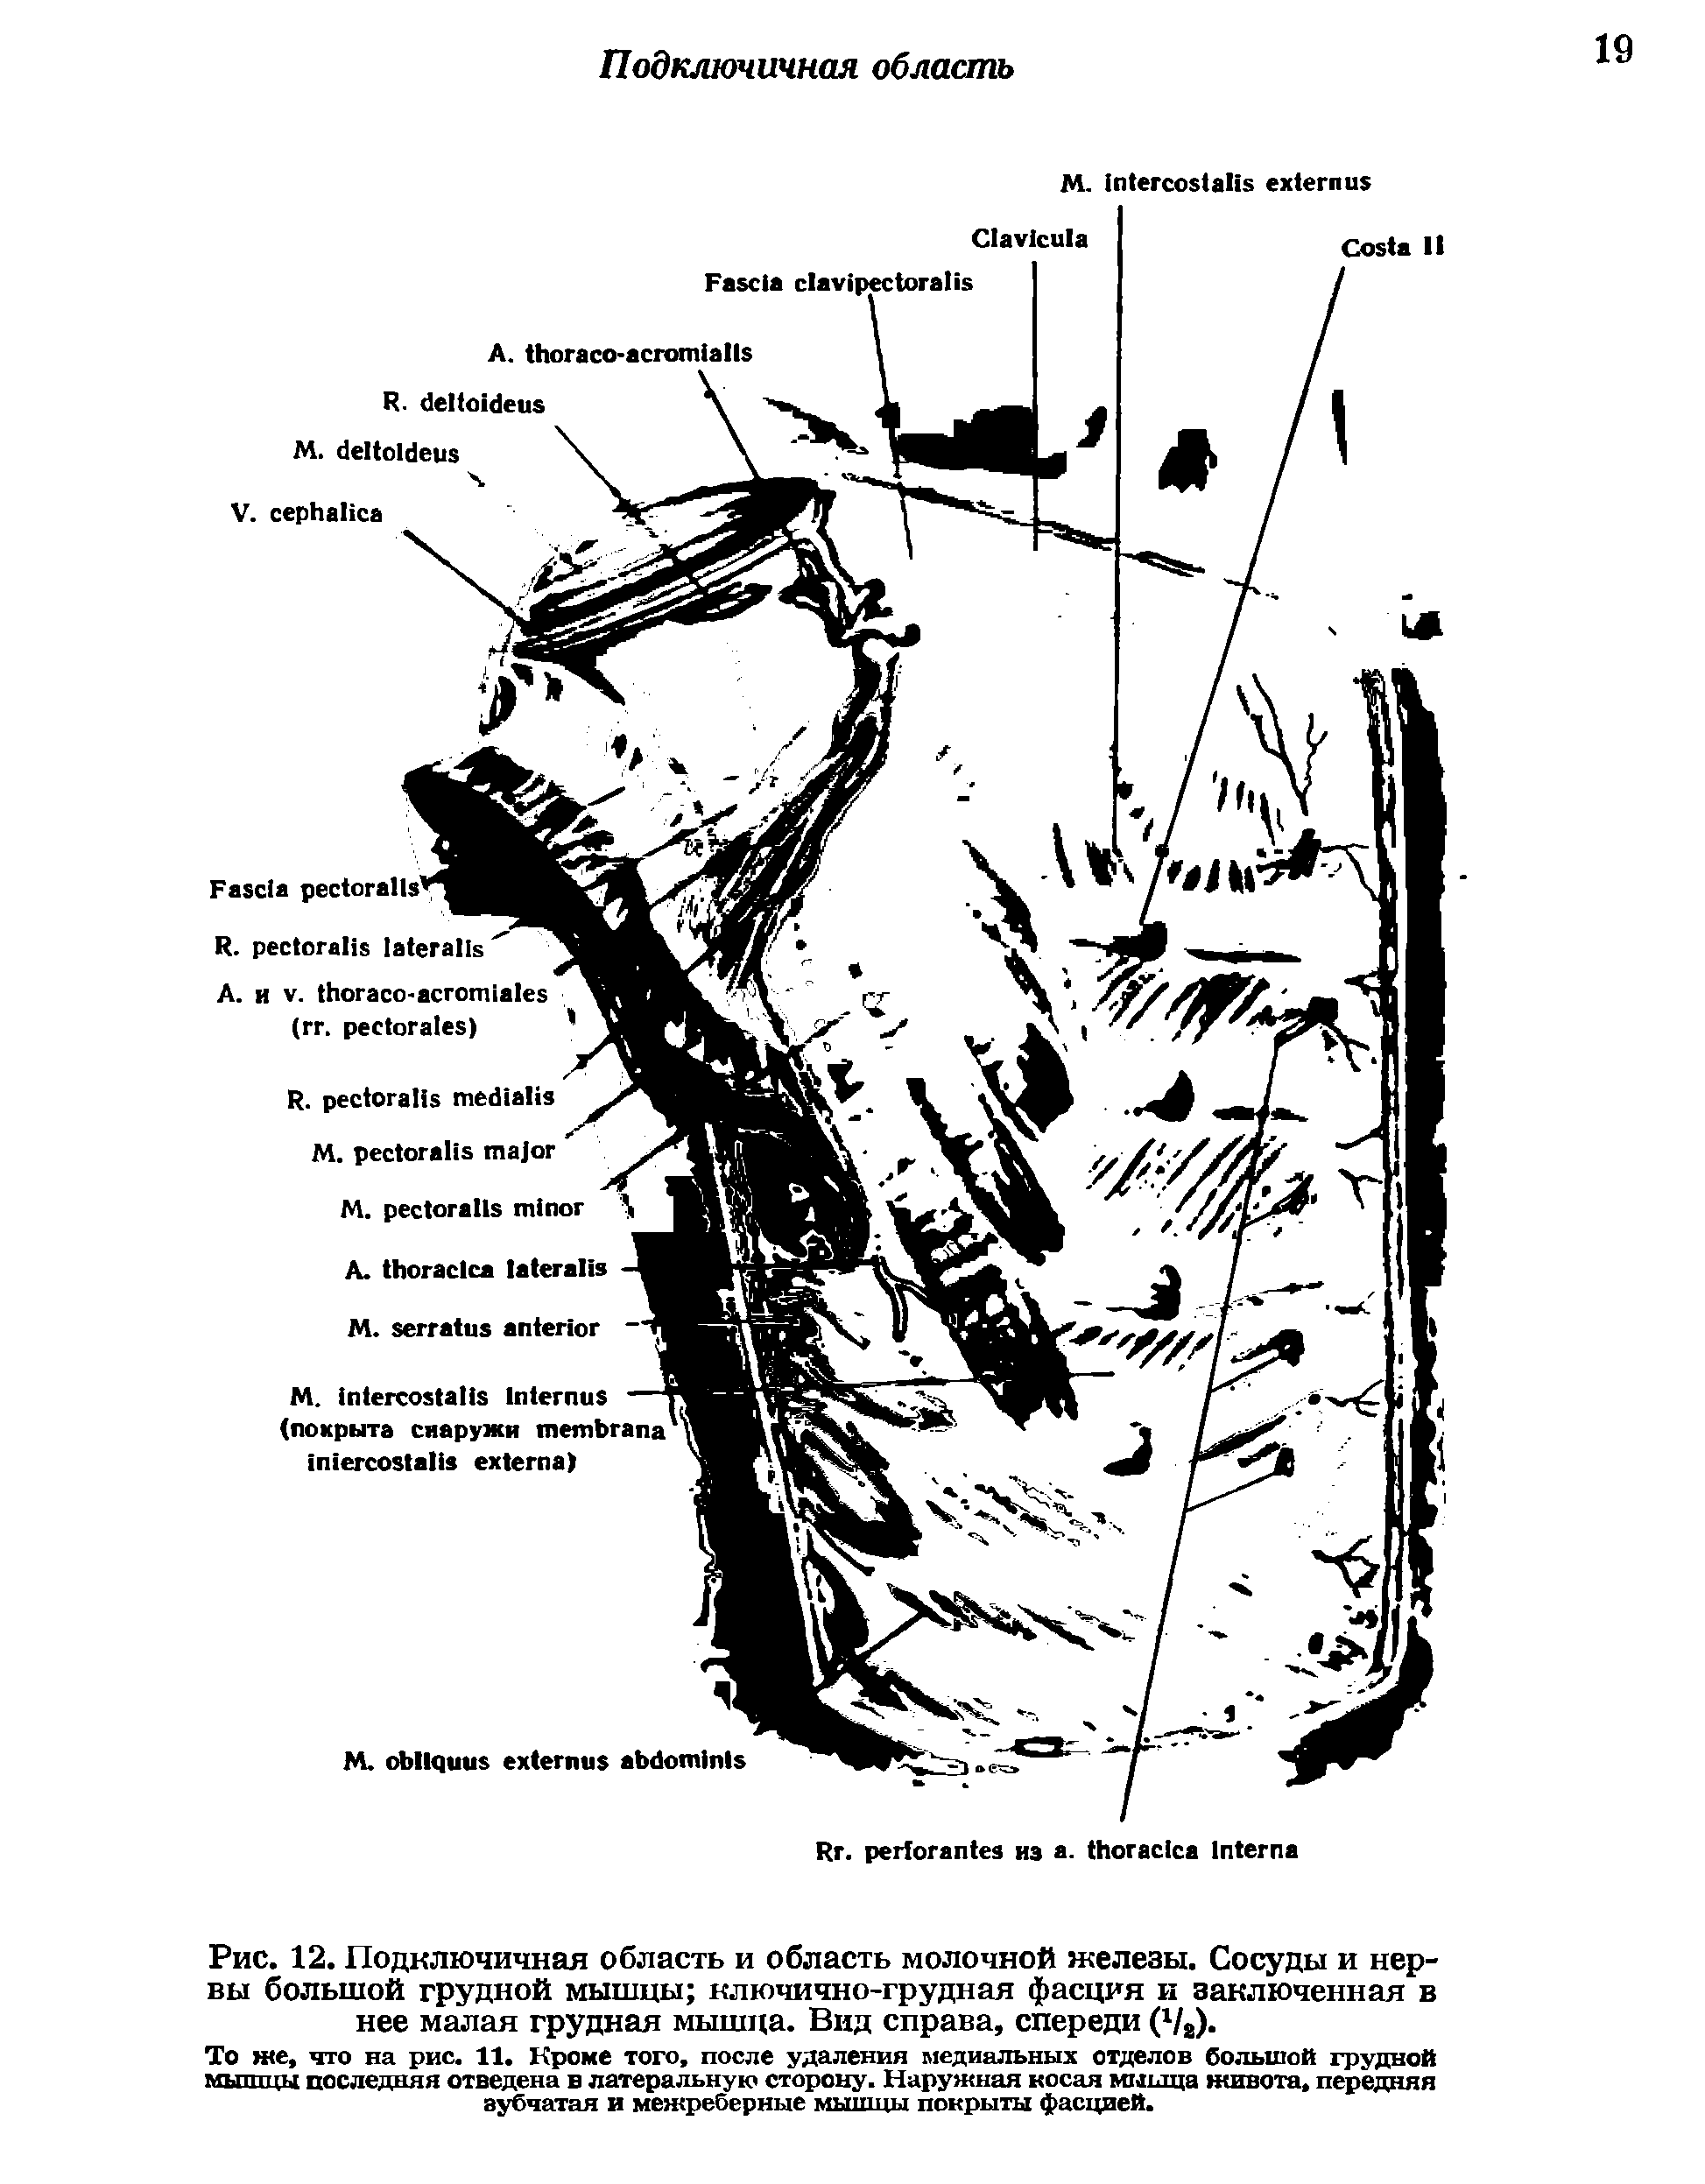 Рис. 12. Подключичная область и область молочной железы. Сосуды и нервы большой грудной мышцы ключично-грудная фасция и заключенная в нее малая грудная мышца. Вид справа, спереди (1/а).